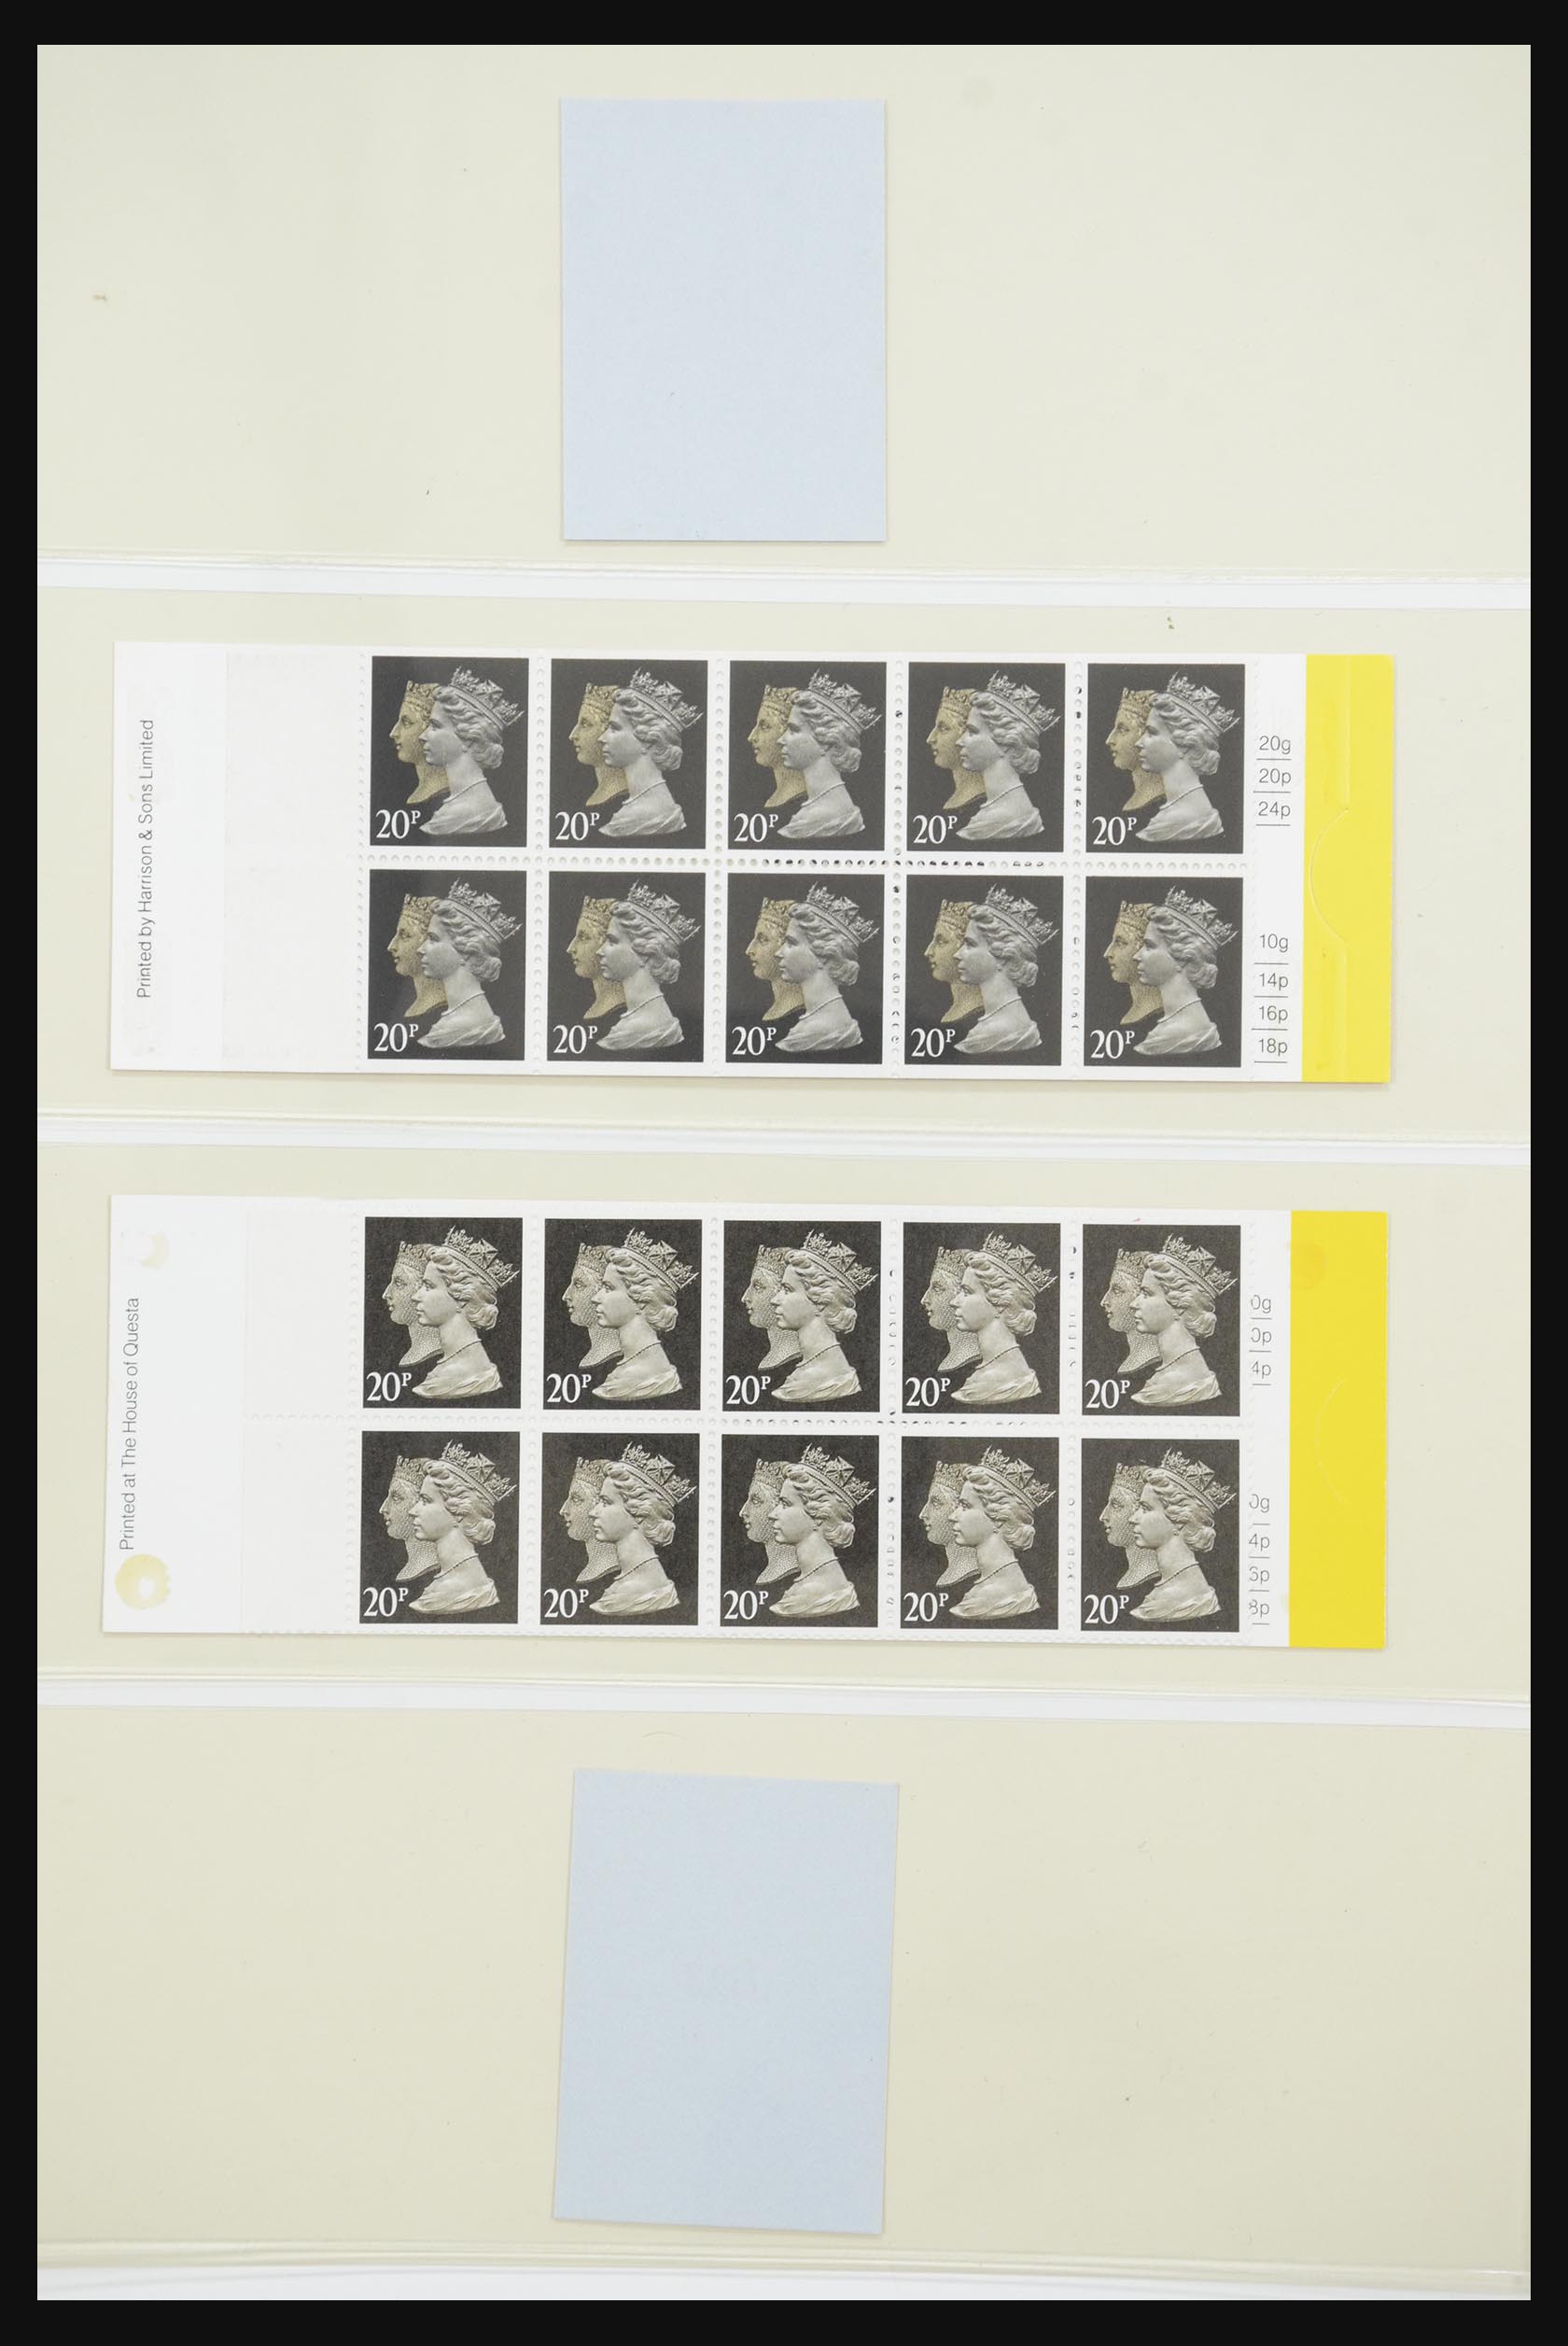 31960 188 - 31960 Engeland postzegelboekjes 1989-2000.